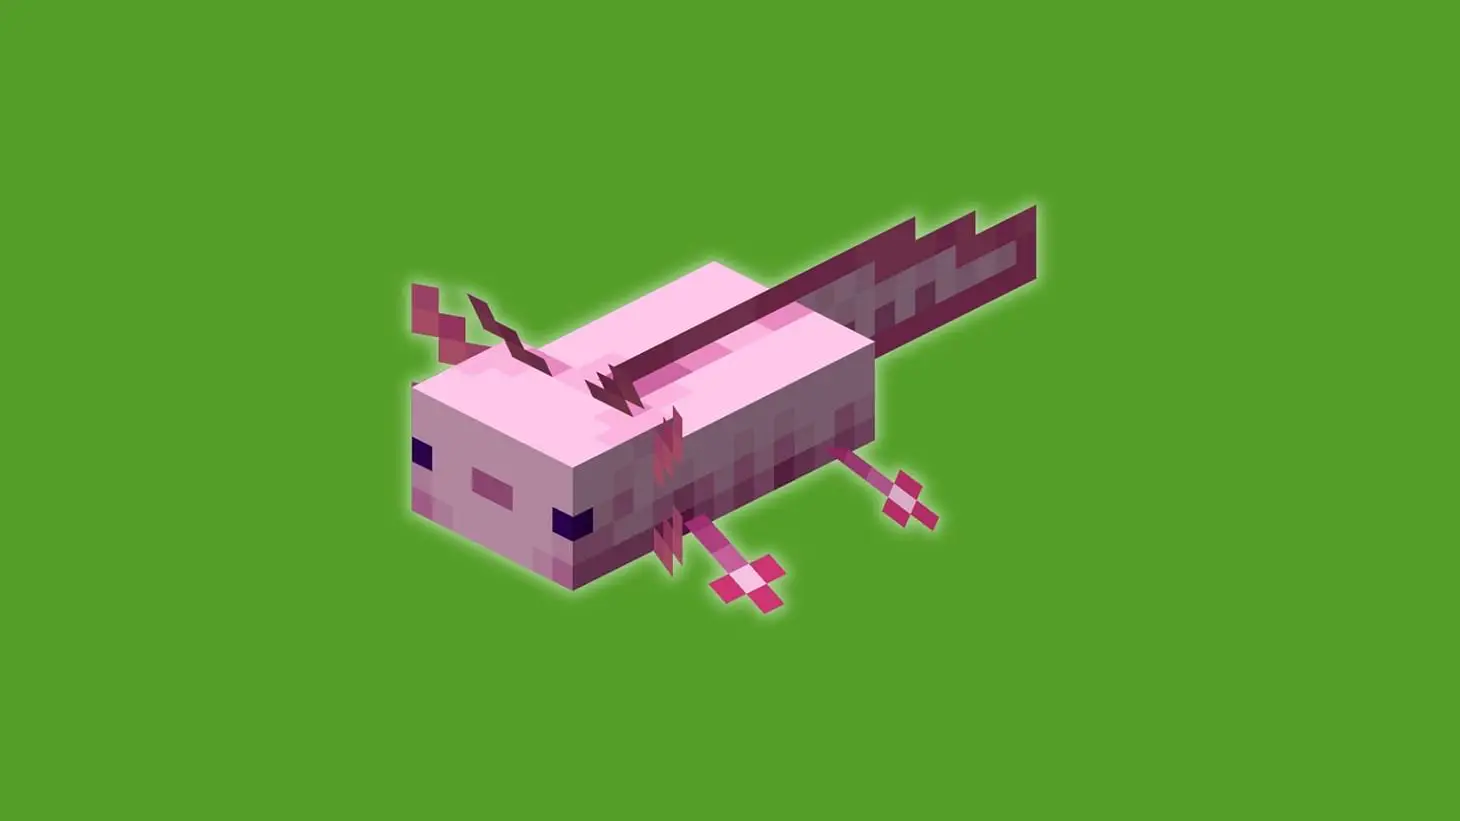 Không biết đặt tên thú cưng trong Minecraft sao cho hay? Đây là 50 tên thú cưng hay nhất dành cho bạn